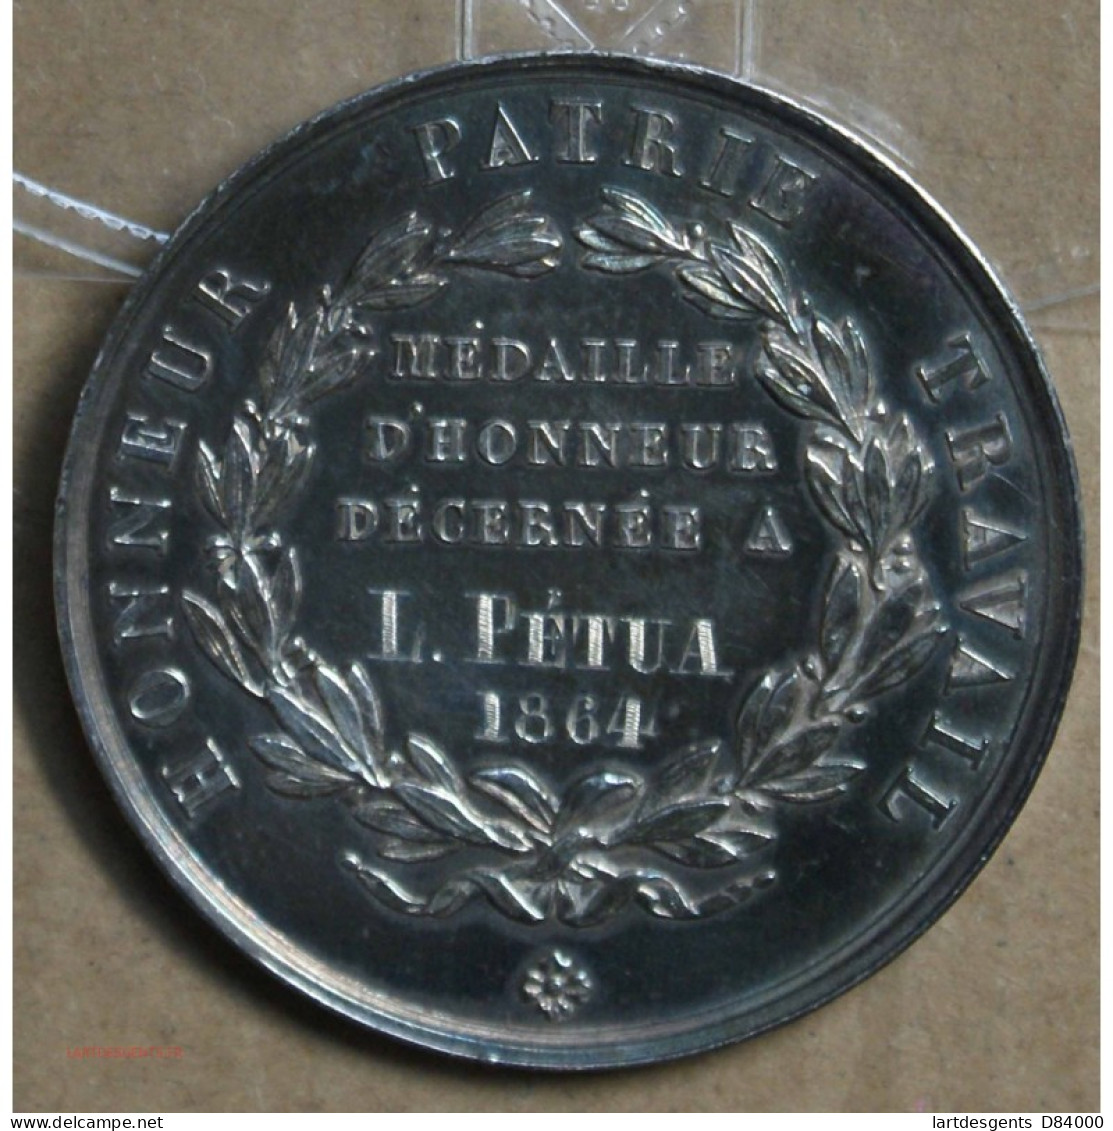 Médaille Argent "Arts Professionnels Besançon Honneur Patrie Travail" 1864, Attribué à Pétua (26), Lartdesgents.fr - Royal / Of Nobility